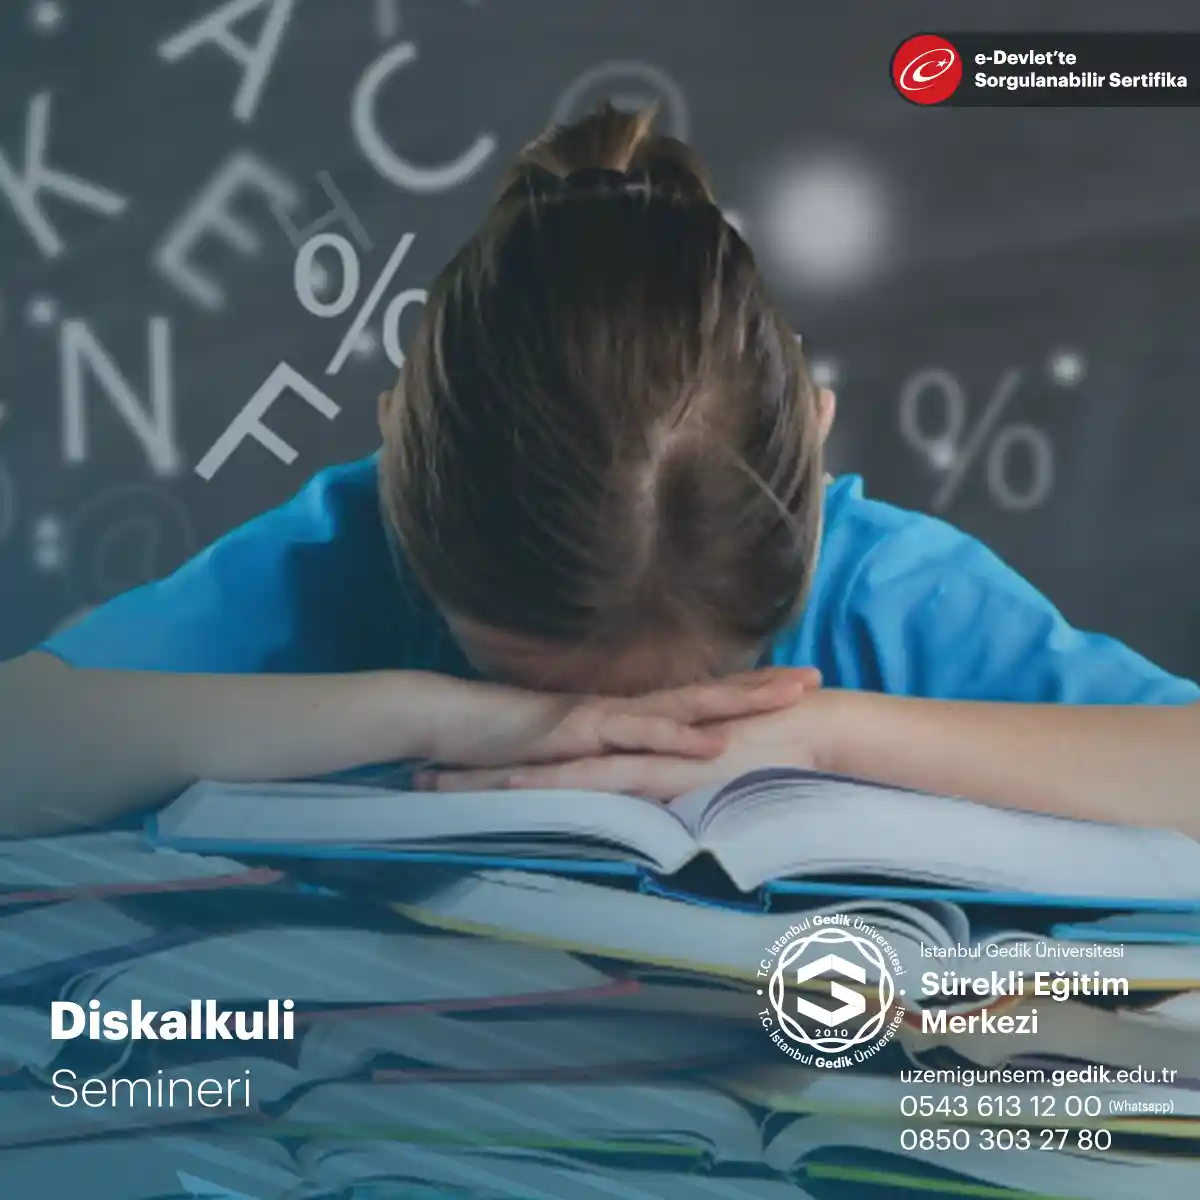 Diskalkuli seminerleri, matematik güçlüğü veya disleksi ile birlikte matematik sorunları yaşayan öğrenciler için düzenlenen eğitim etkinlikleridir.